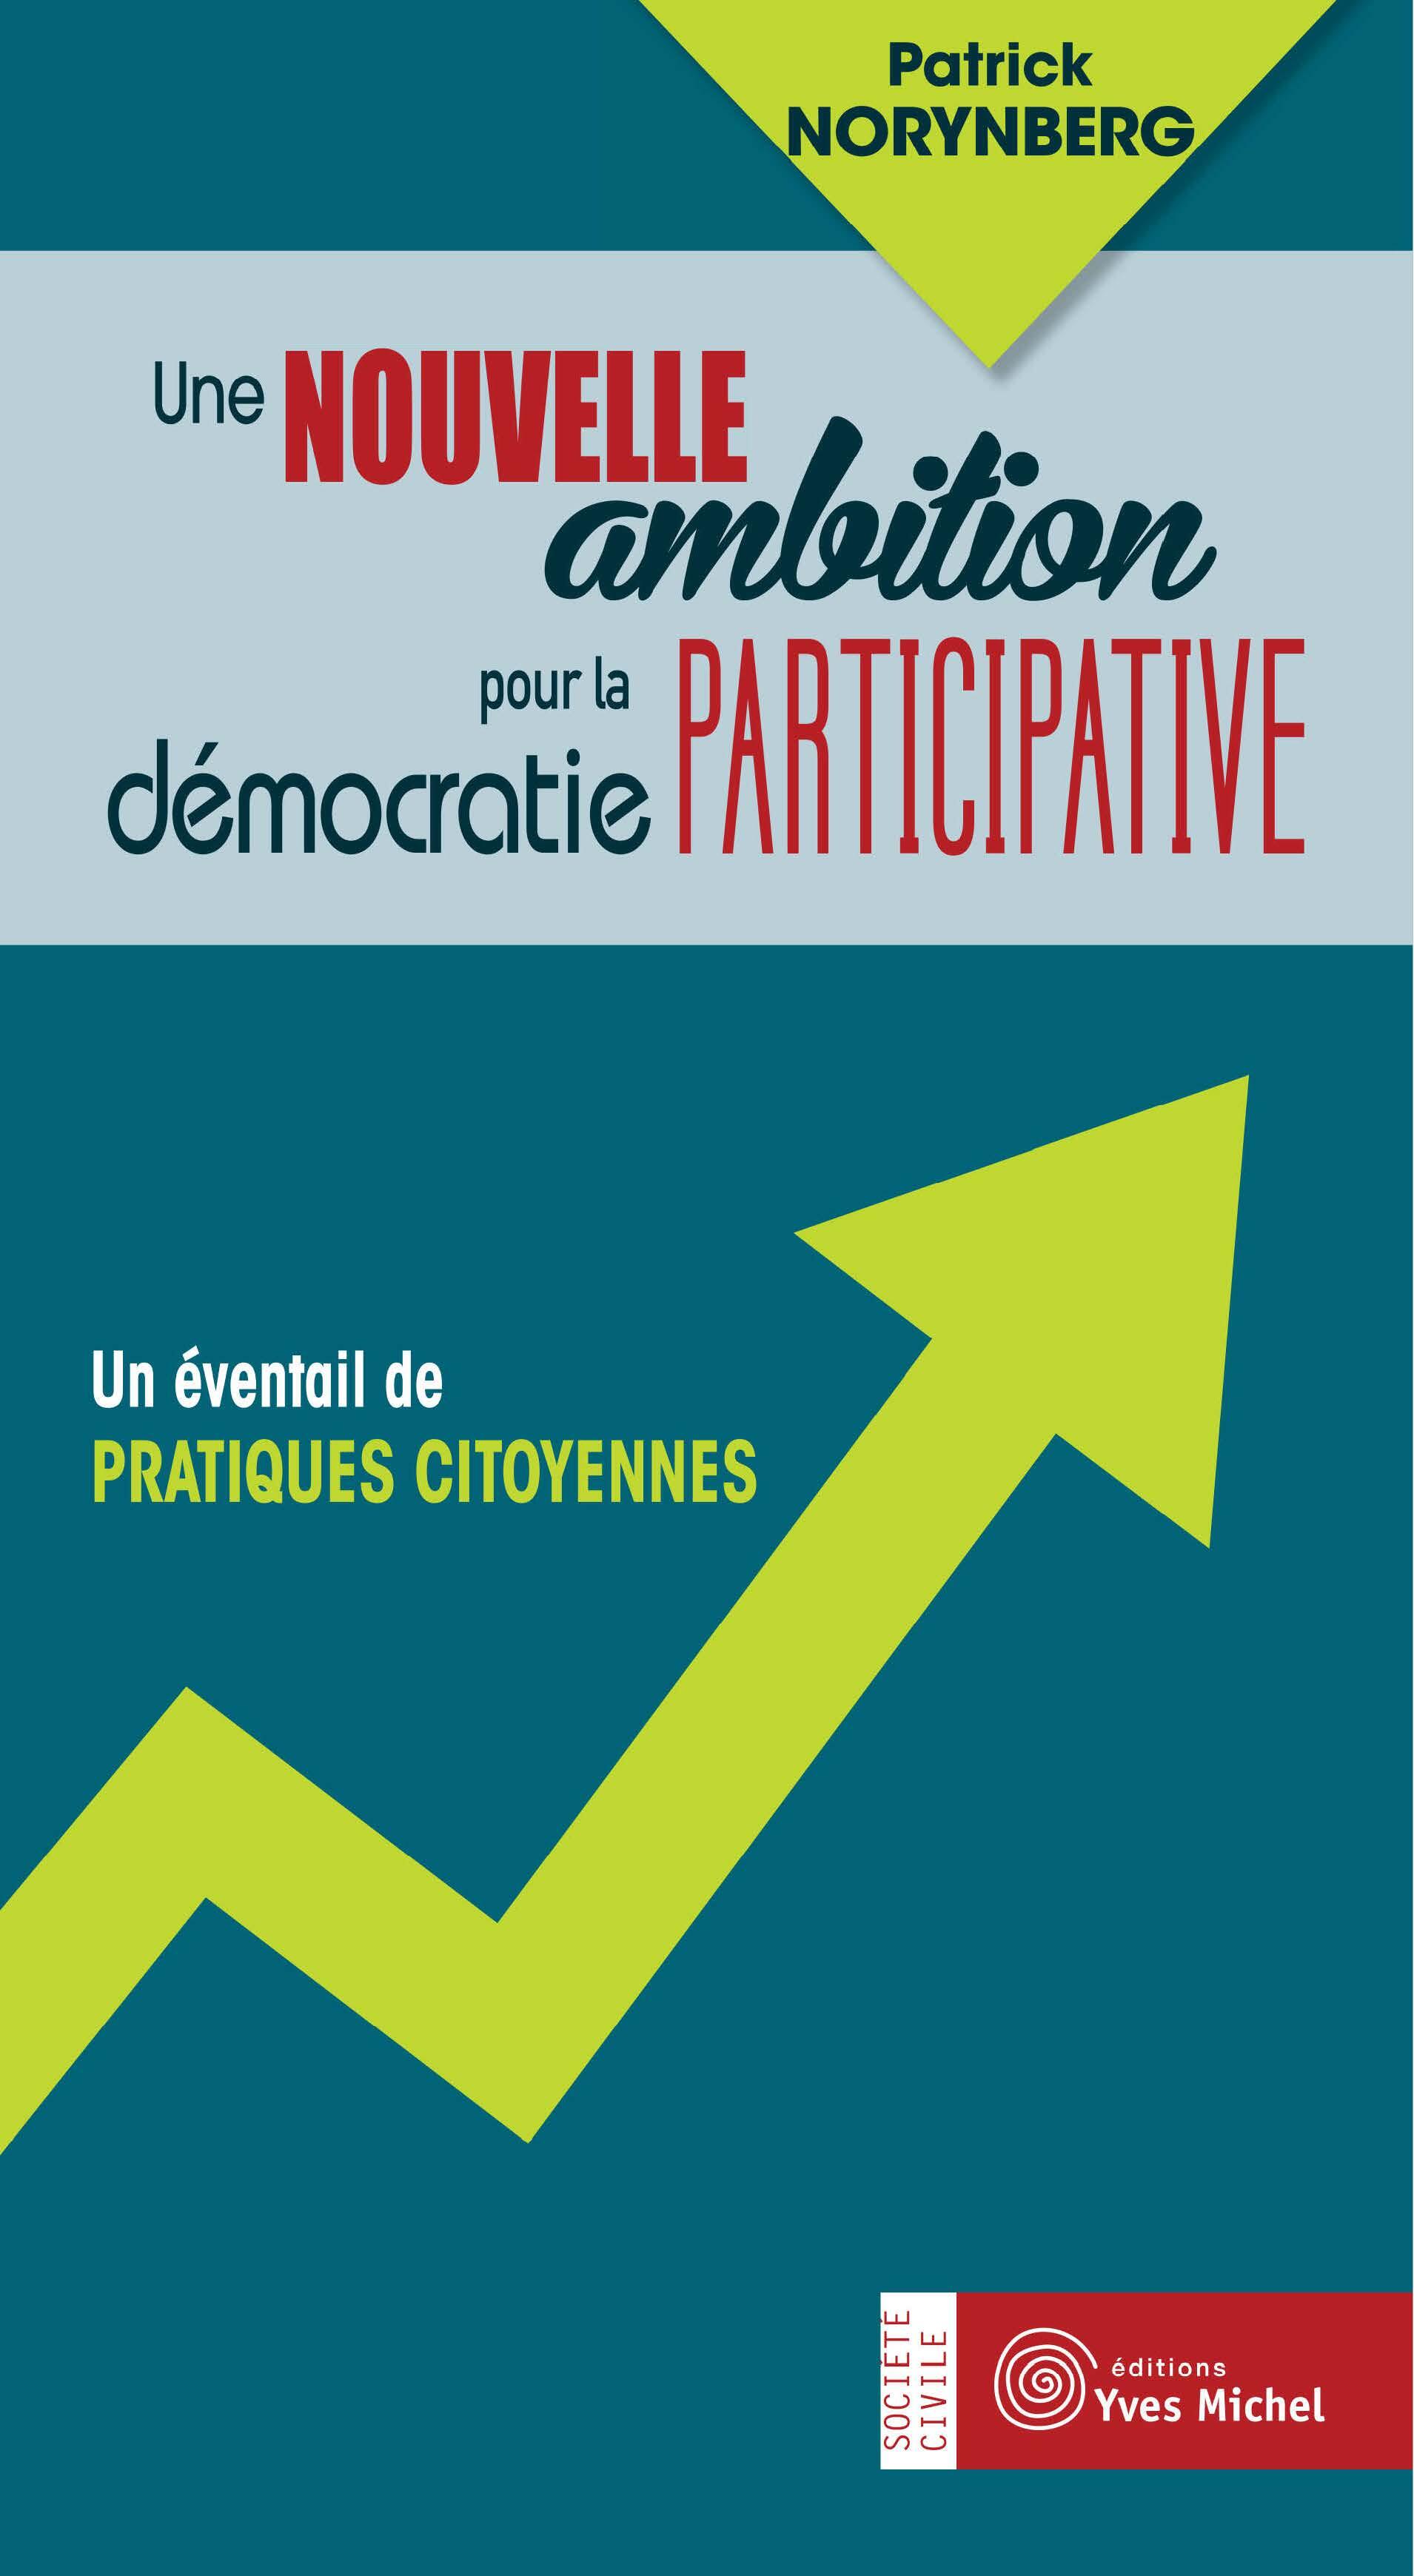 Une nouvelle ambition pour la démocratie participative